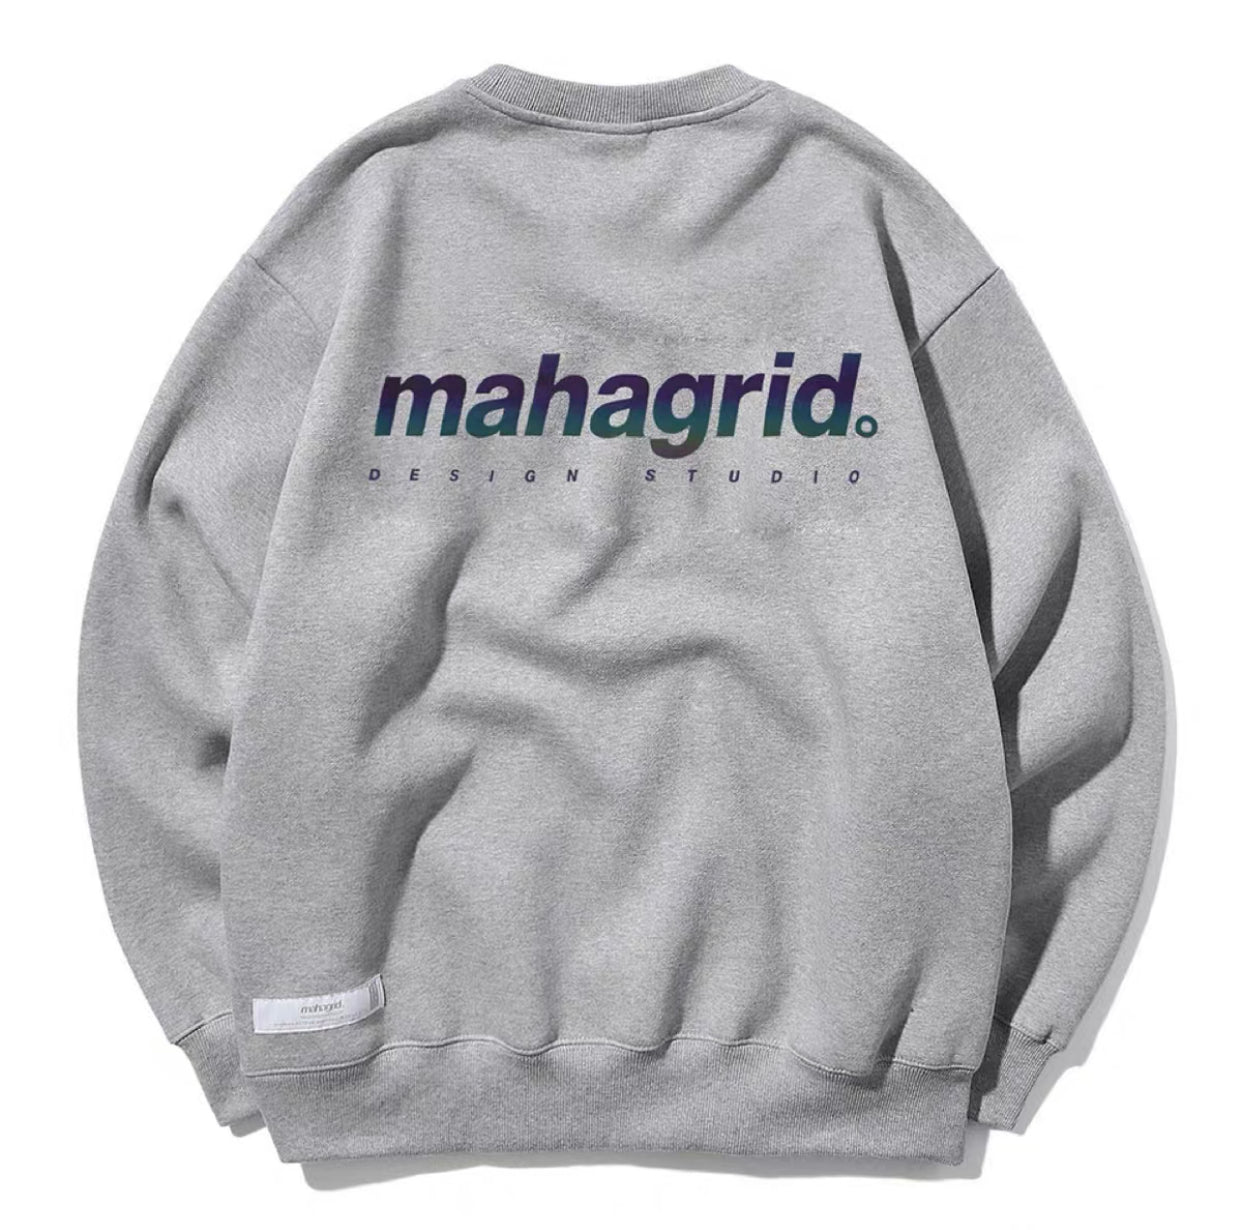 Mahagrid 3M Rainbow Reflective Sweater Grey